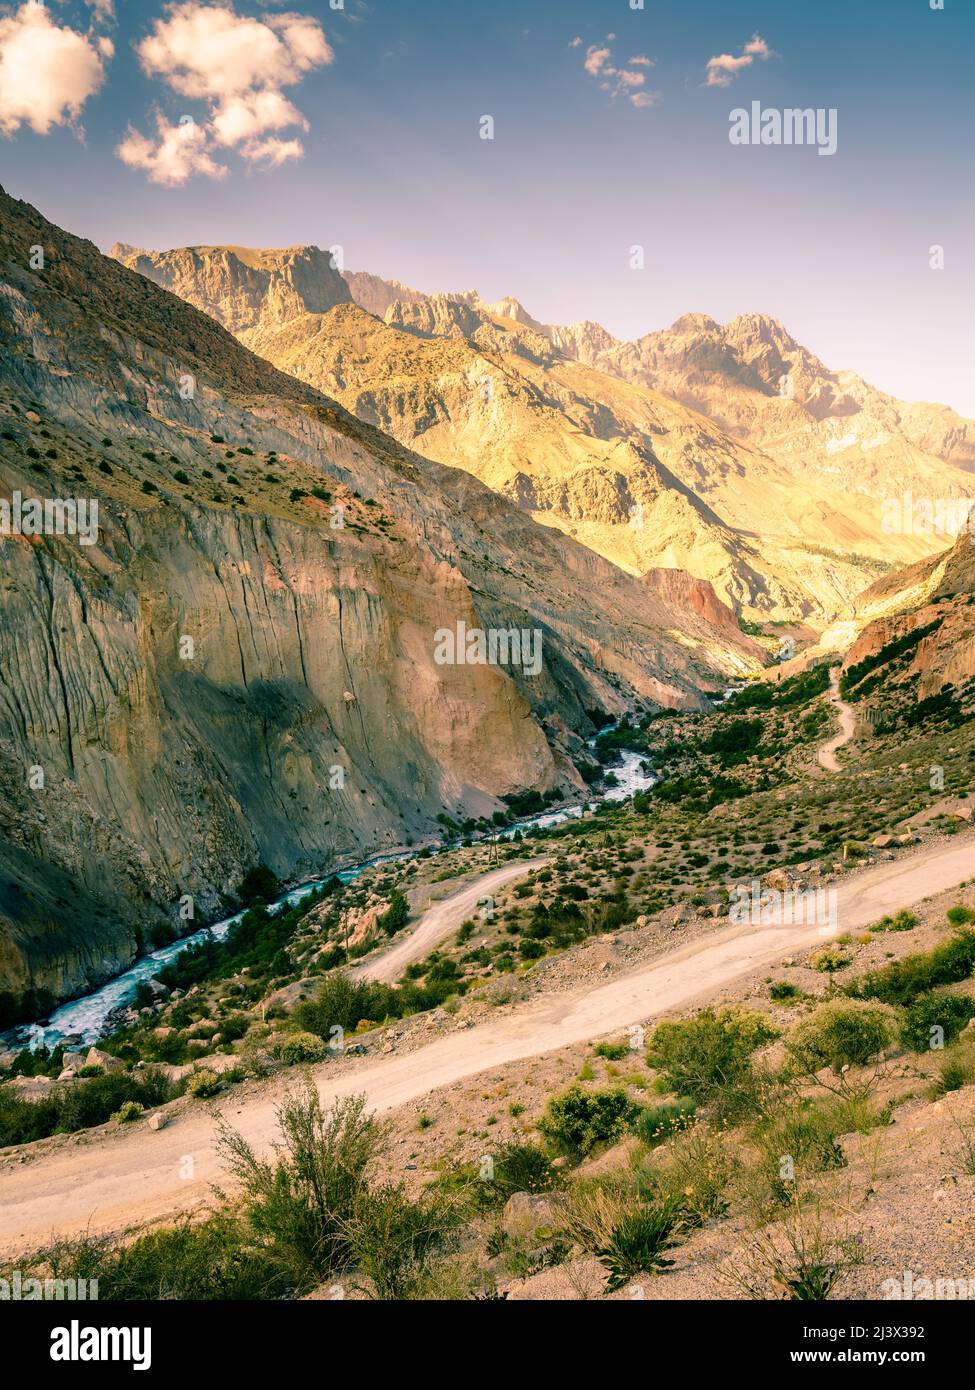 Malerische Bergstraße nach Iskanderkul - ein alpiner See in den Bergen Tadschikistans Stockfoto